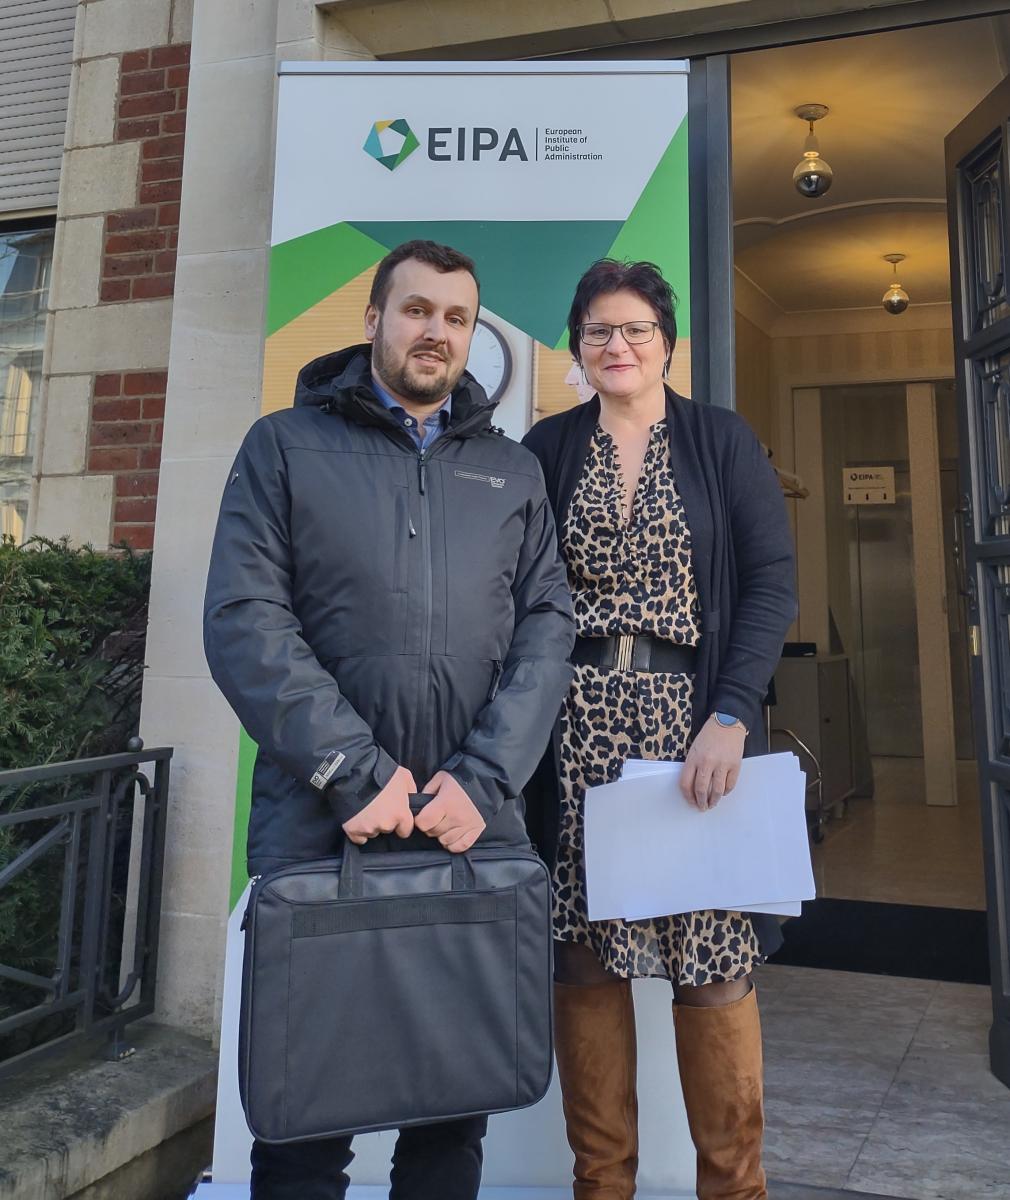 Przedstawiciel EIPA i KSSIP- kobieta i mężczyzna stoją na tle białozielonego baneru z logo gospodarza projektu - Europejskiego Instytutu Administracji Publicznej.